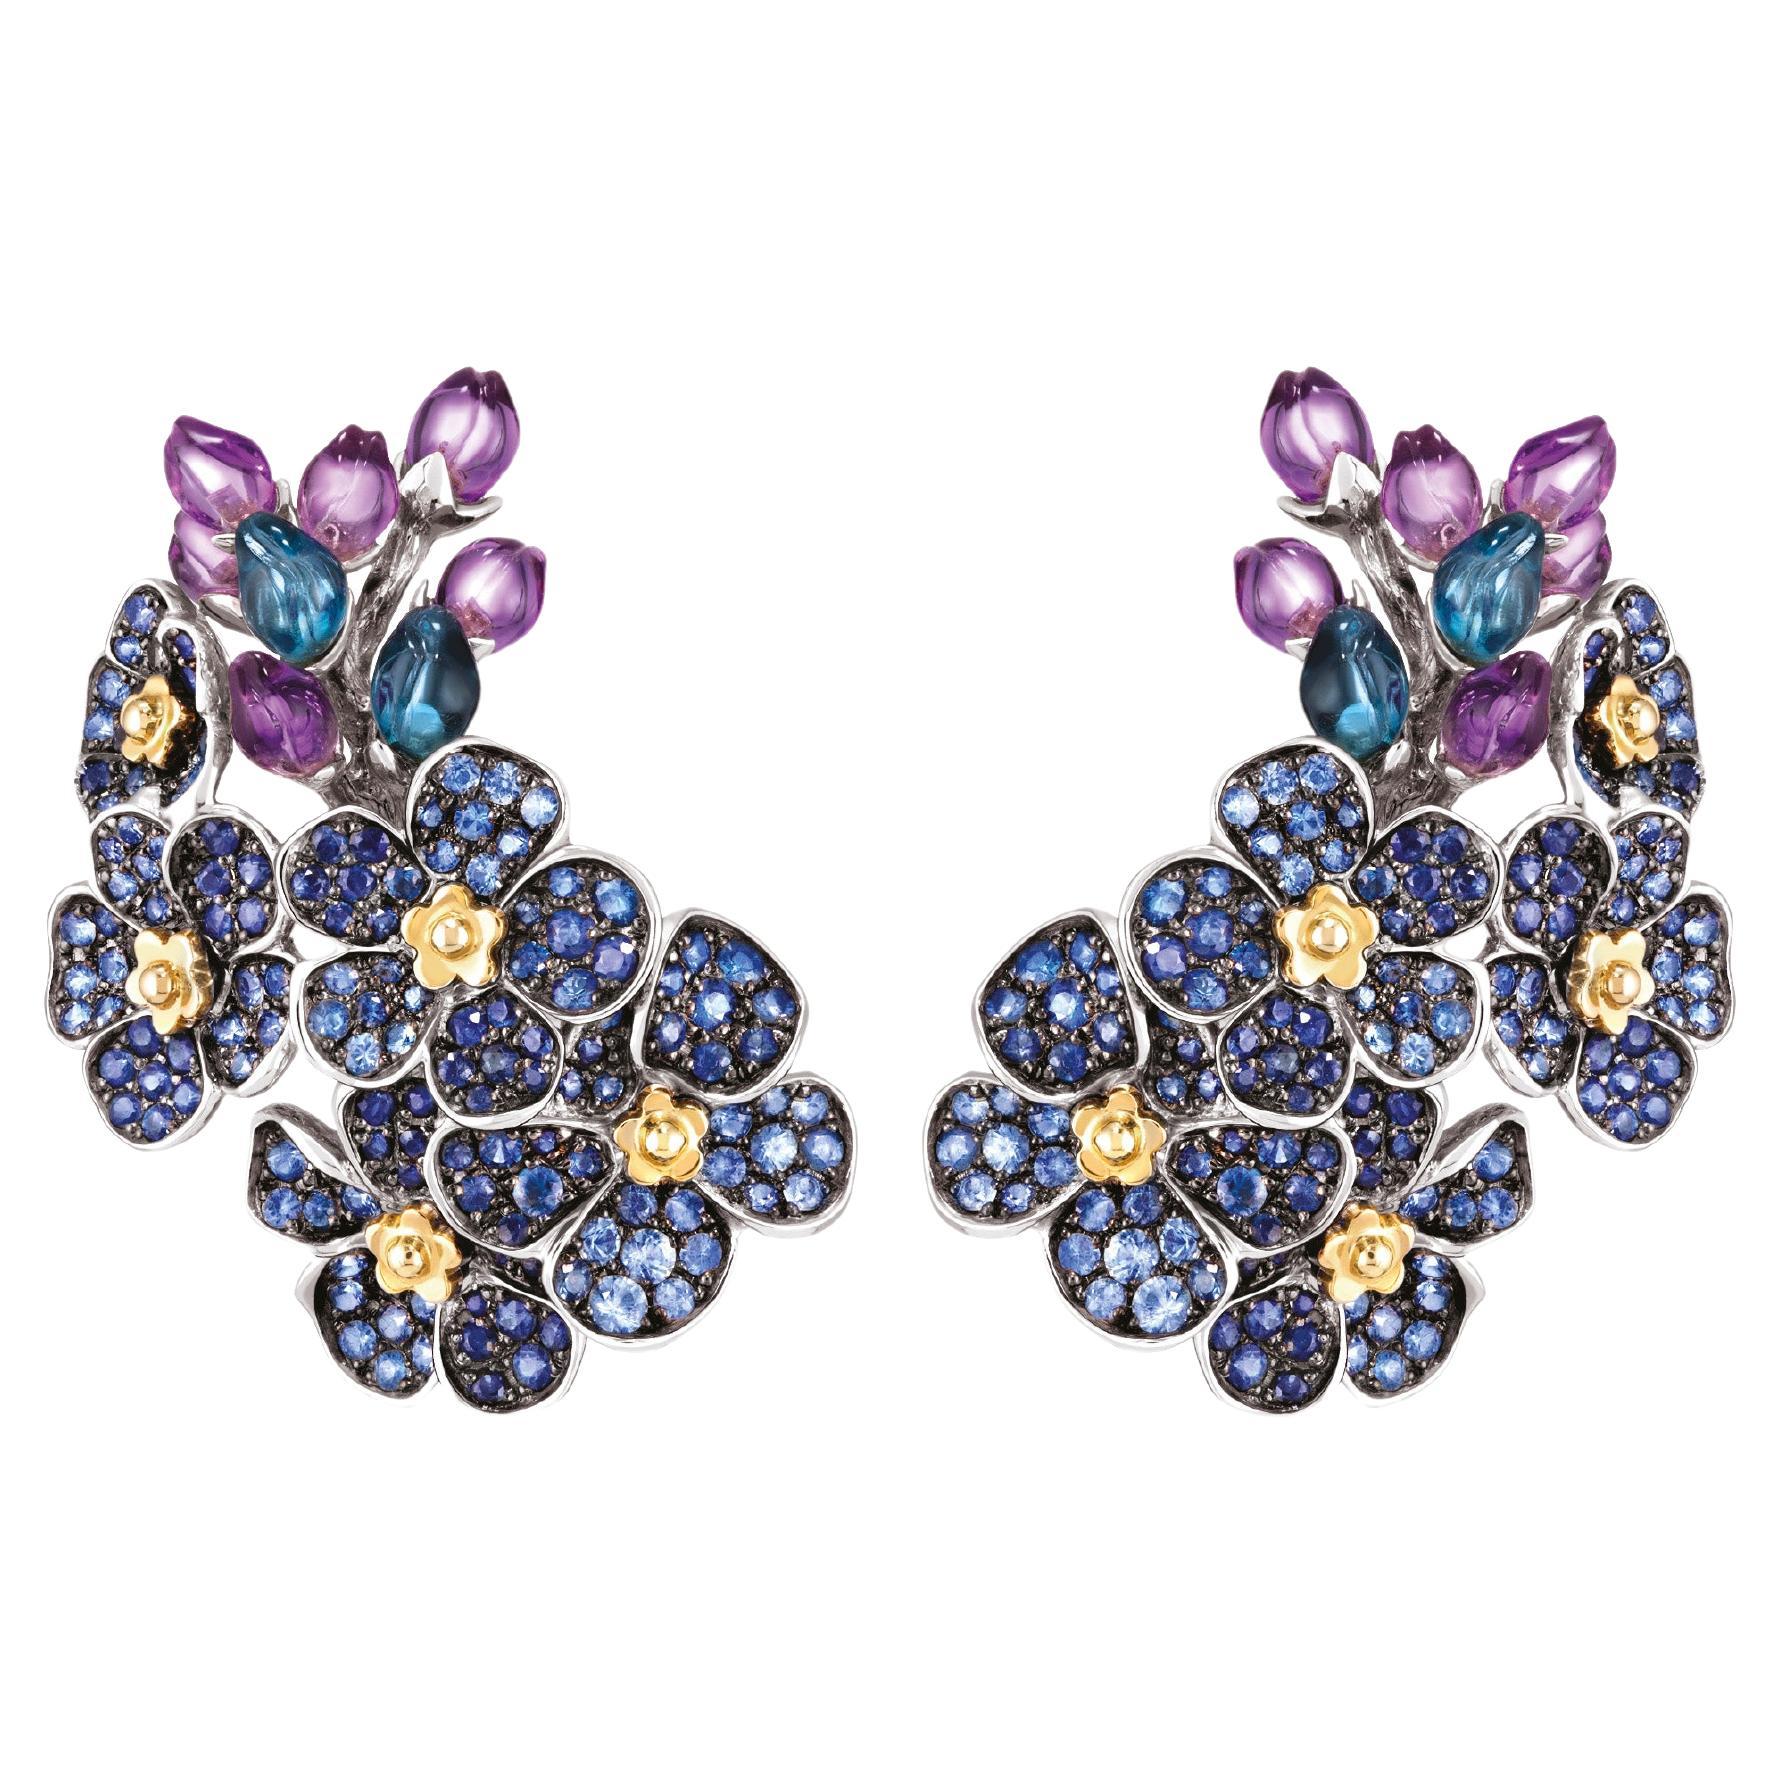 Flower Cluster Earrings - 18k Gold, Blue Sapphires, Amethyst, Topaz For Sale